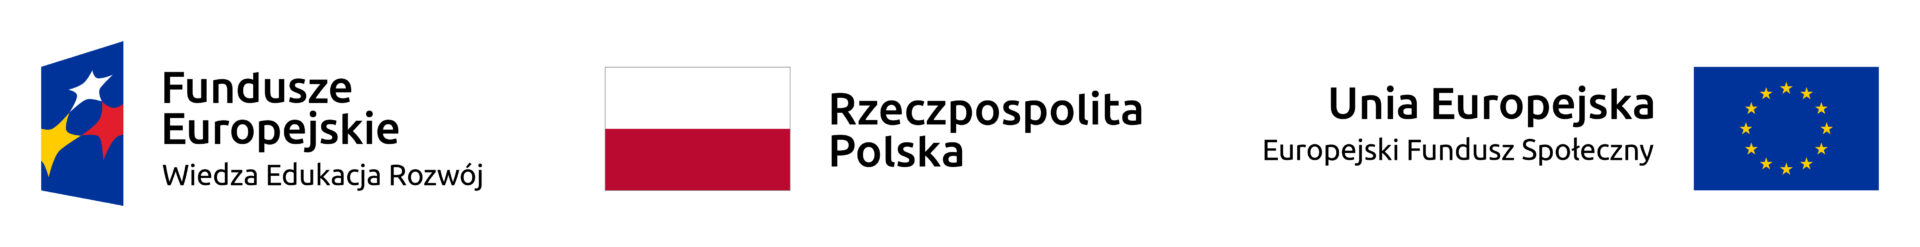 Od lewej: logo Fundusze Europejskie Wiedza Edukacja Rozwój, flaga Rzeczpospolitej Polski, flaga Unii Europejskiej Europejski Fundusz społeczny